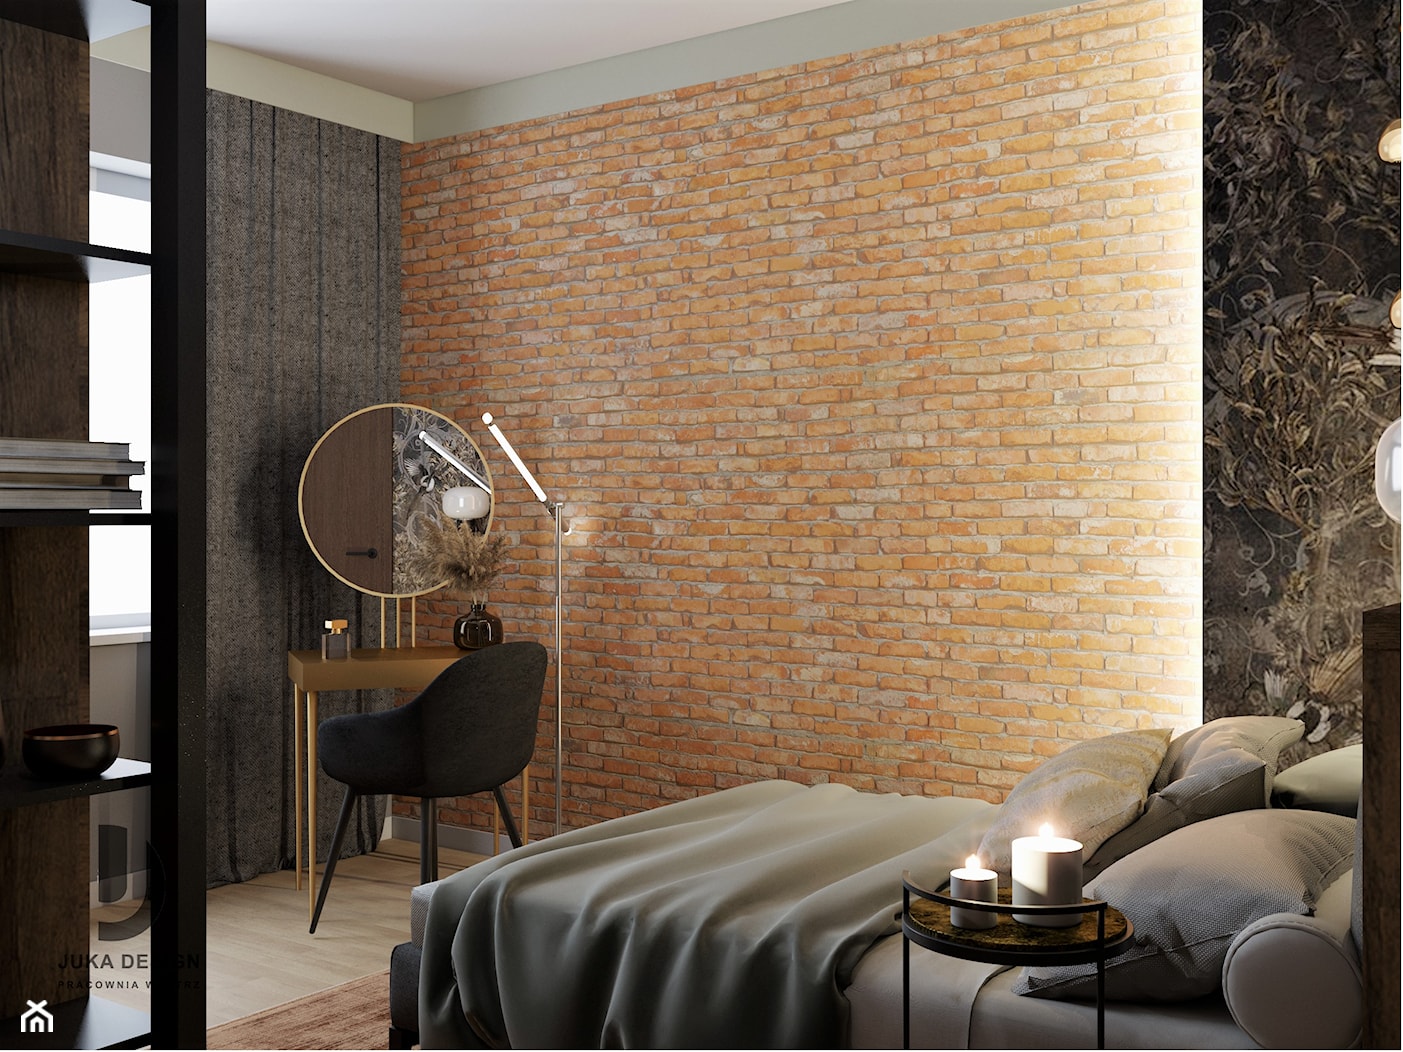 klimatyczna sypialnia z dużą szafą, cegłą i tapetą - zdjęcie od JUKA design Pracownia Wnętrz - Homebook